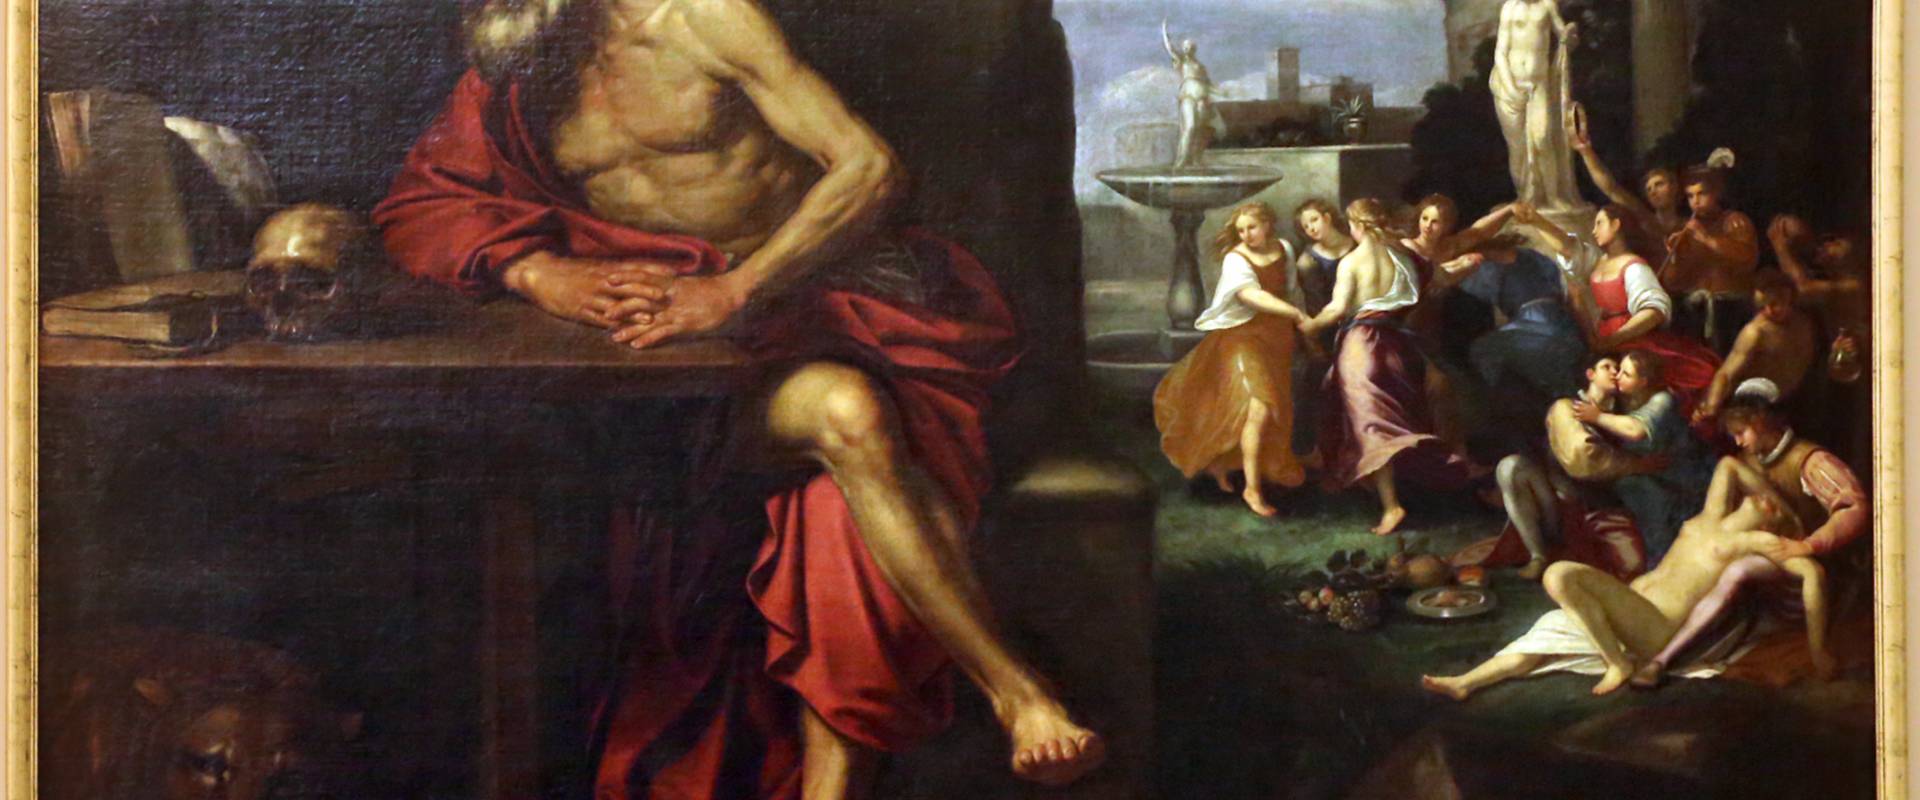 Ambito di bartolomeo gennari, tentazioni di san girolamo, 1645 ca photo by Sailko